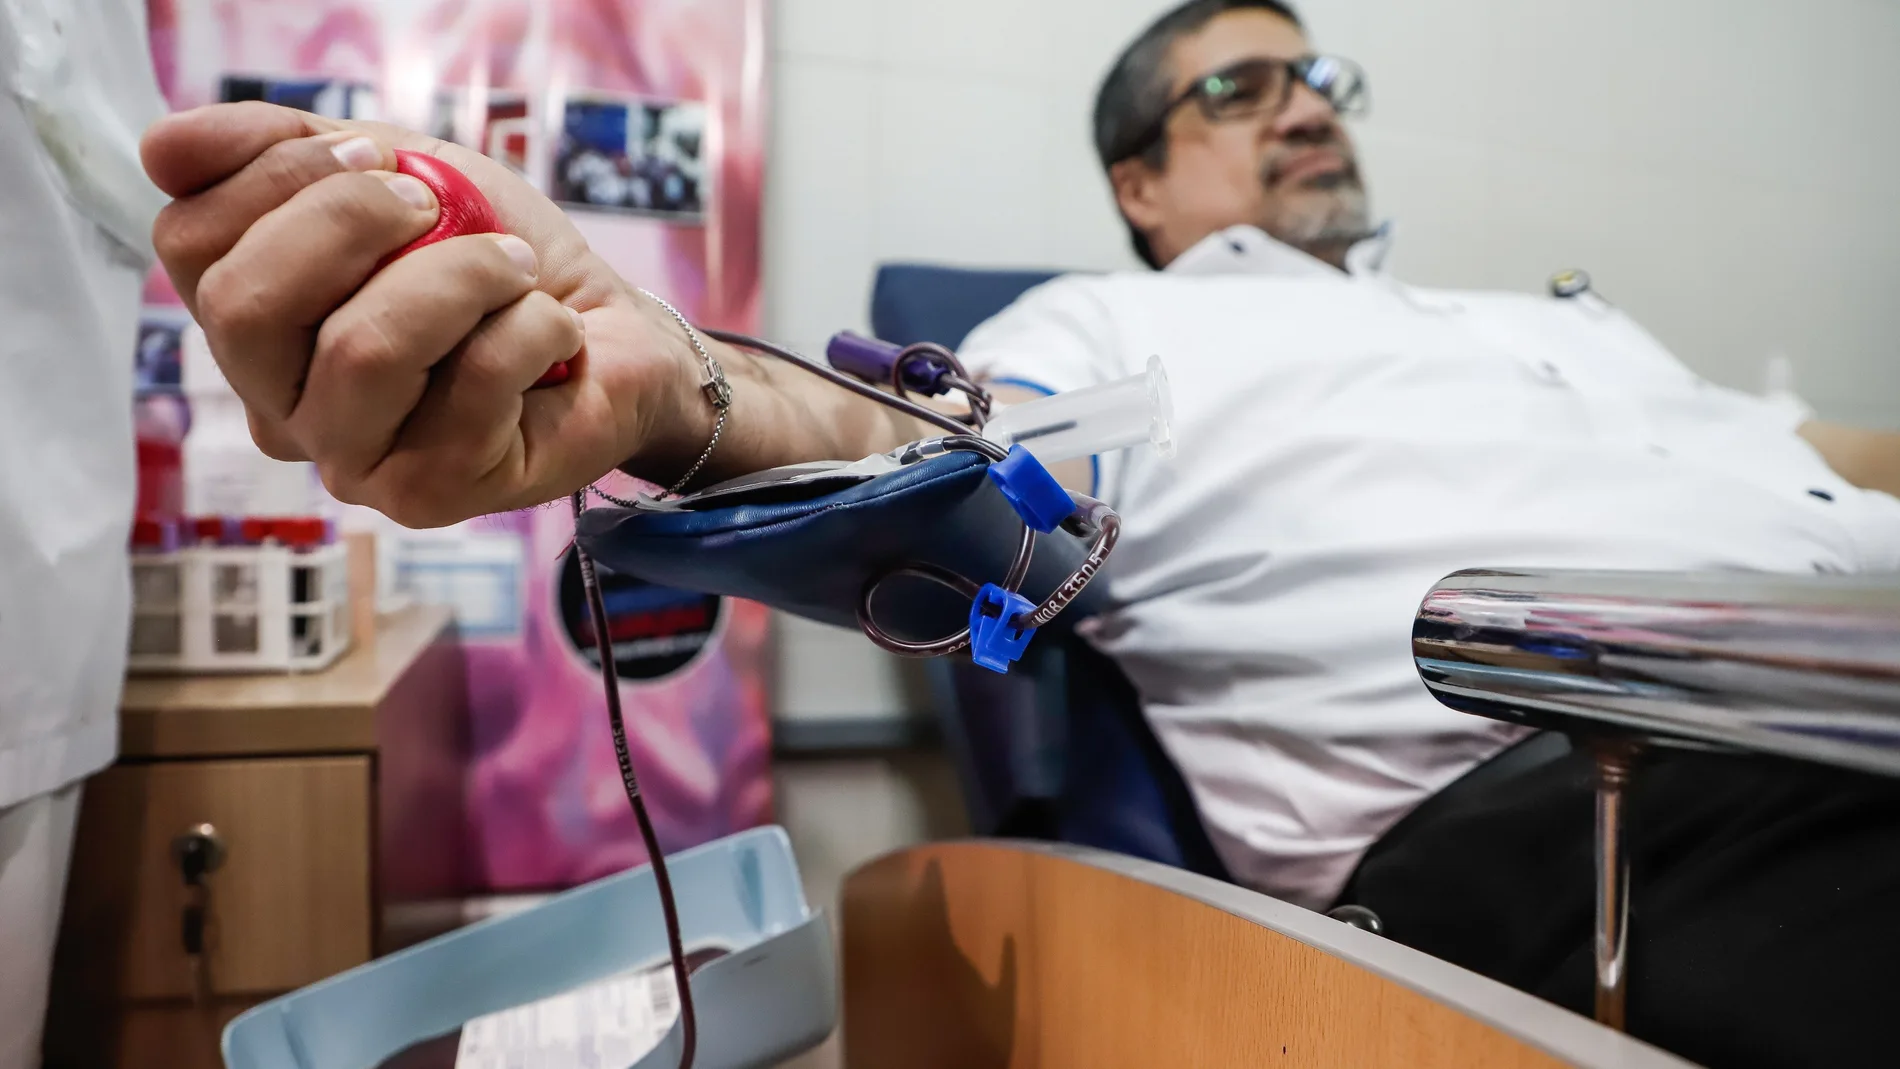 AME607. ASUNCIÓN (PARAGUAY), 10/01/2020.- Un voluntario dona sangre este viernes en el Centro Nacional de Servicios de Sangre (CENSSA) en Asunción (Paraguay), para concientizar a la ciudadanía ante la gran reducción de las donaciones a nivel nacional. EFE/Nathalia Aguilar